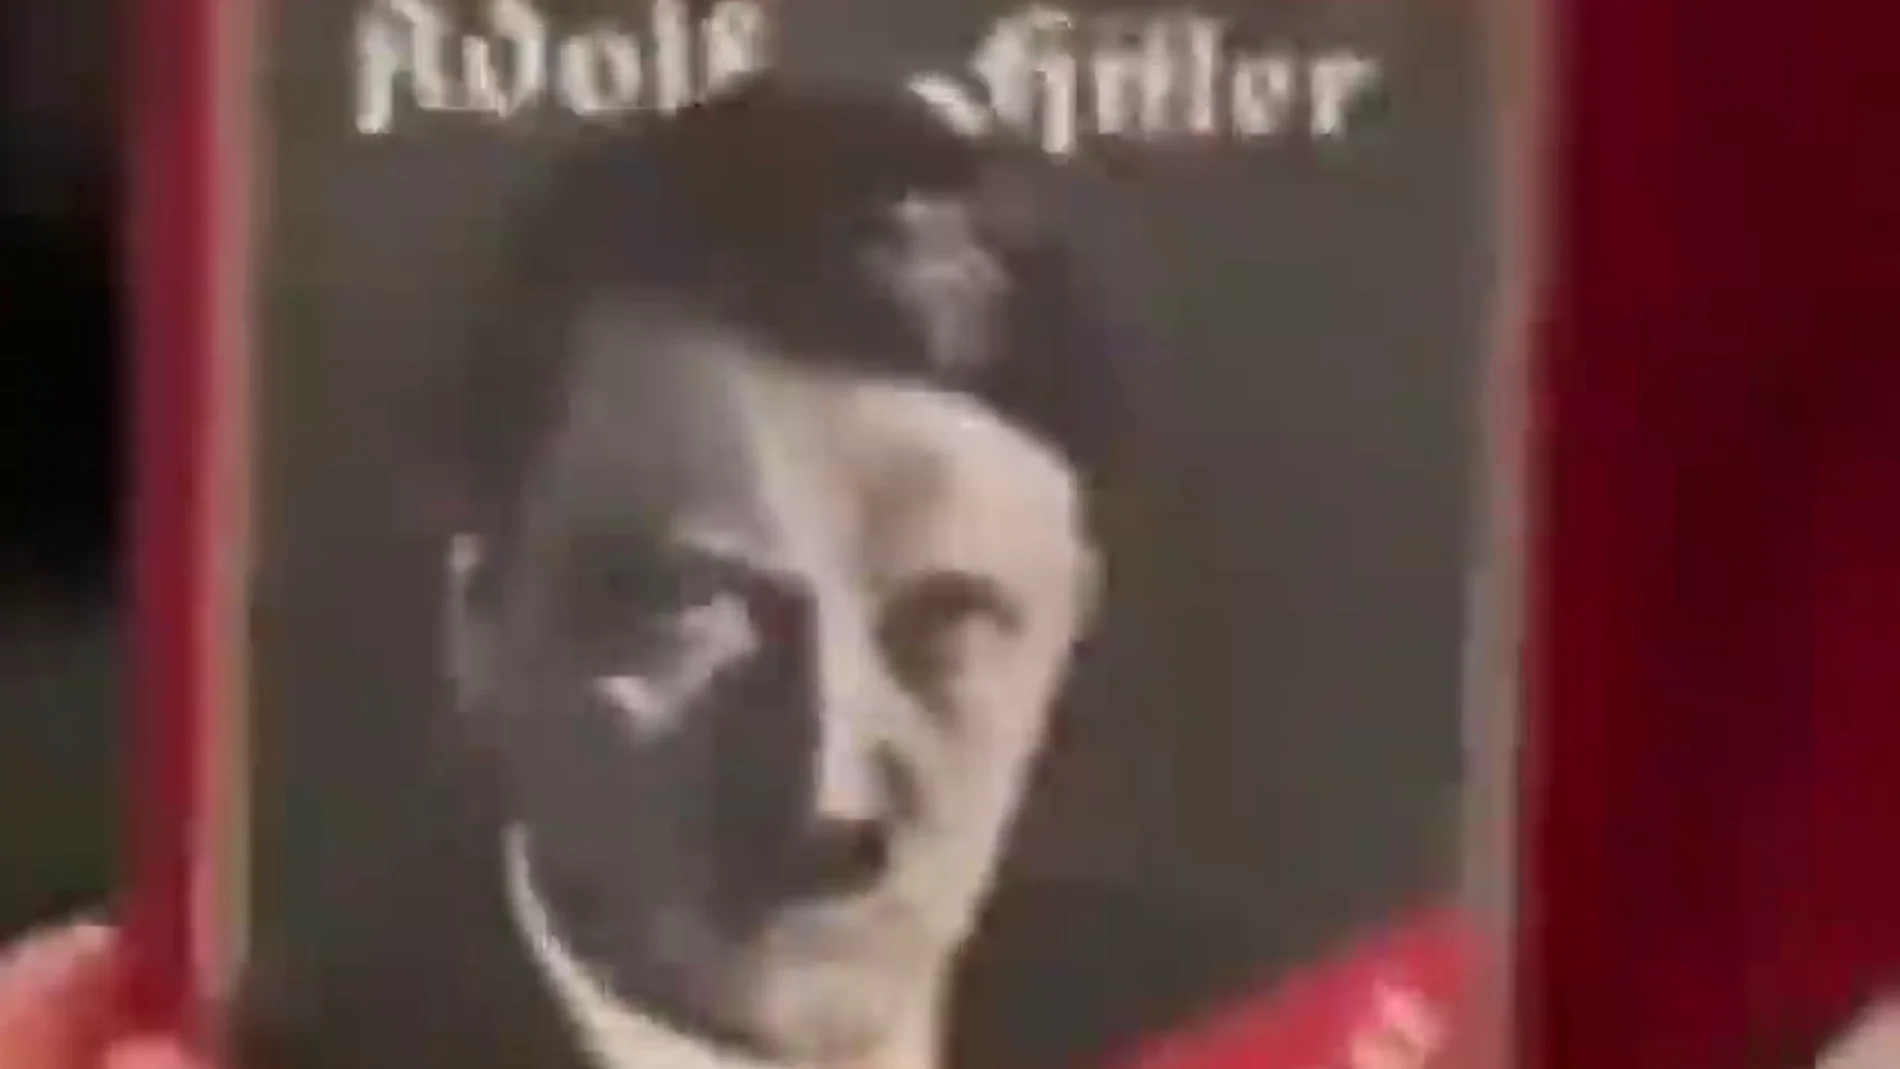 La confusión de un abuelo al regalar a su nieto el 'Mein Kampf' de Hitler en vez del videojuego 'Minecraft'